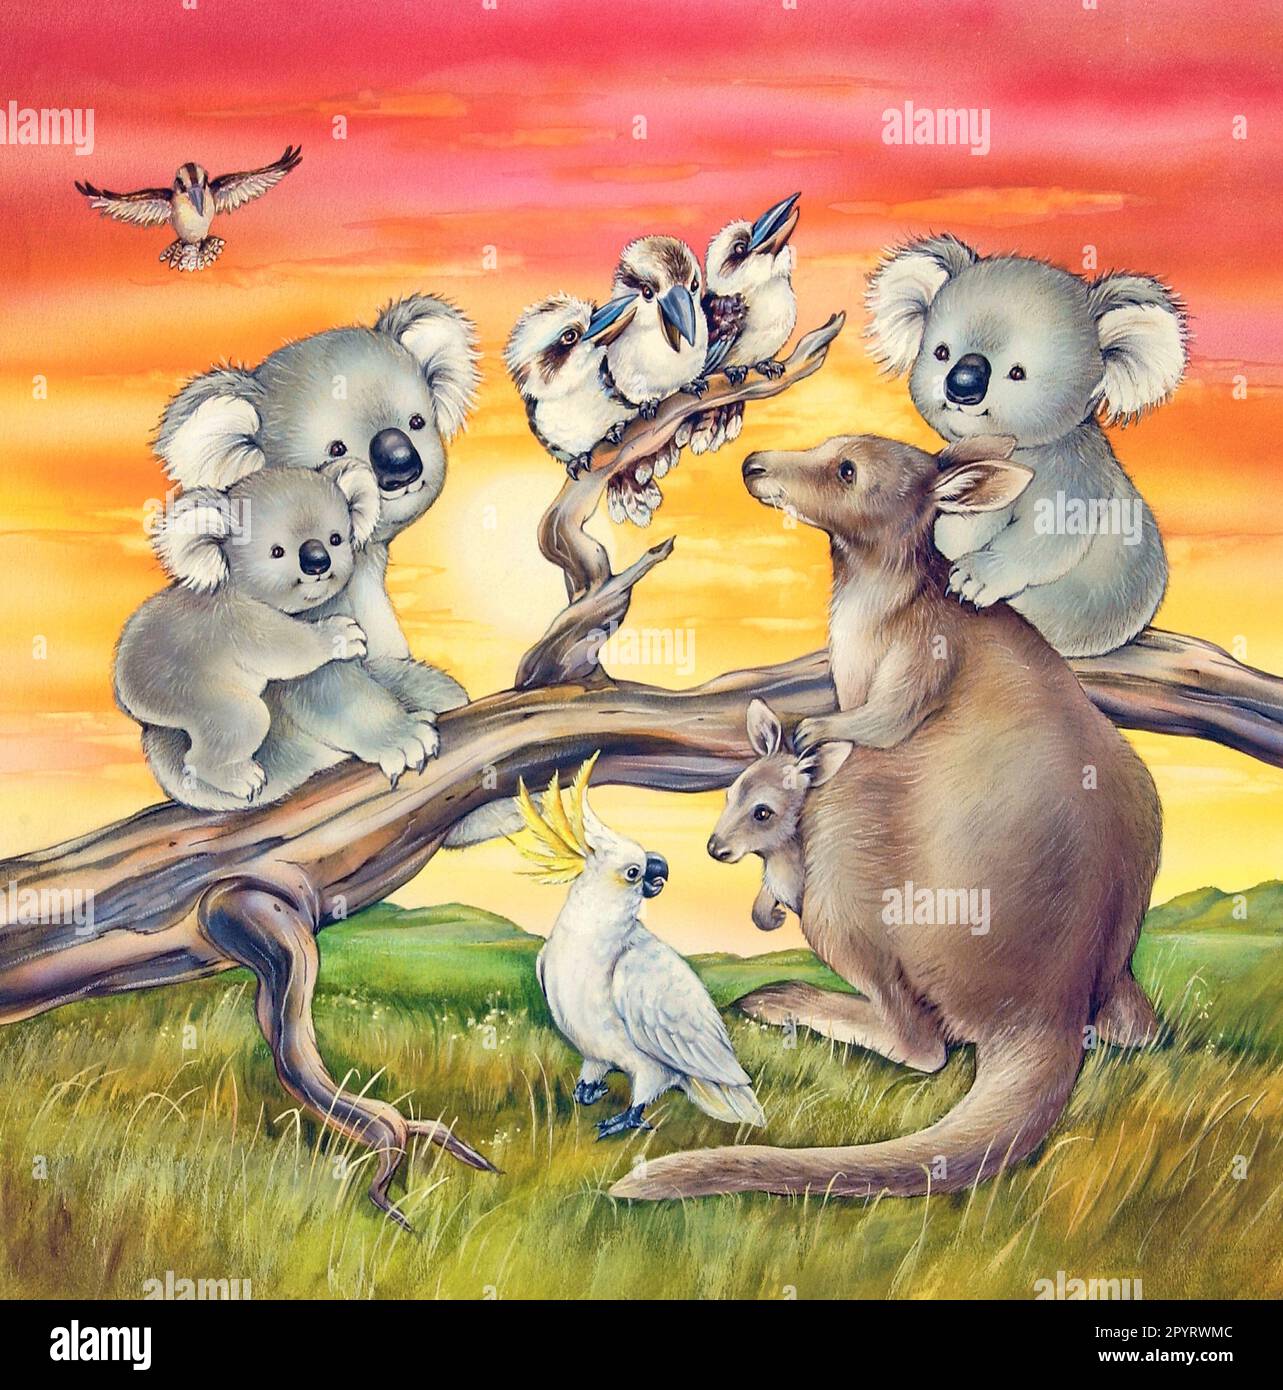 Animals-Australian Animals  Koalas Kangaroo kookaburras gathered at sunset Stock Photo